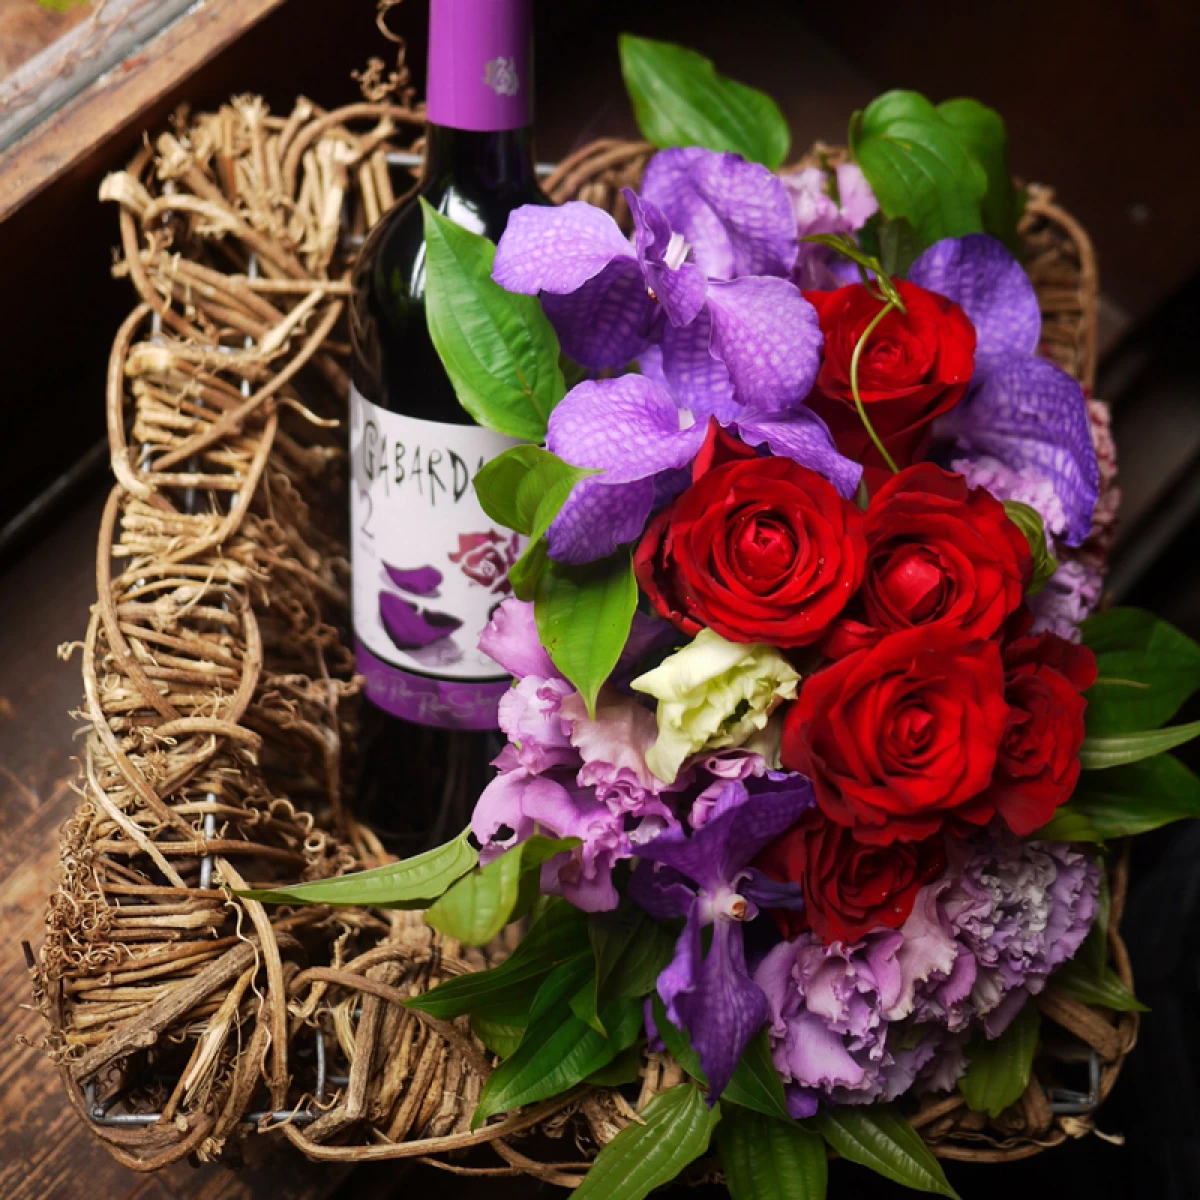 古稀祝い 内祝い[花プレゼント]バラの花柄ラベルのスペイン産赤ワインと真紅のバラのアレンジセット